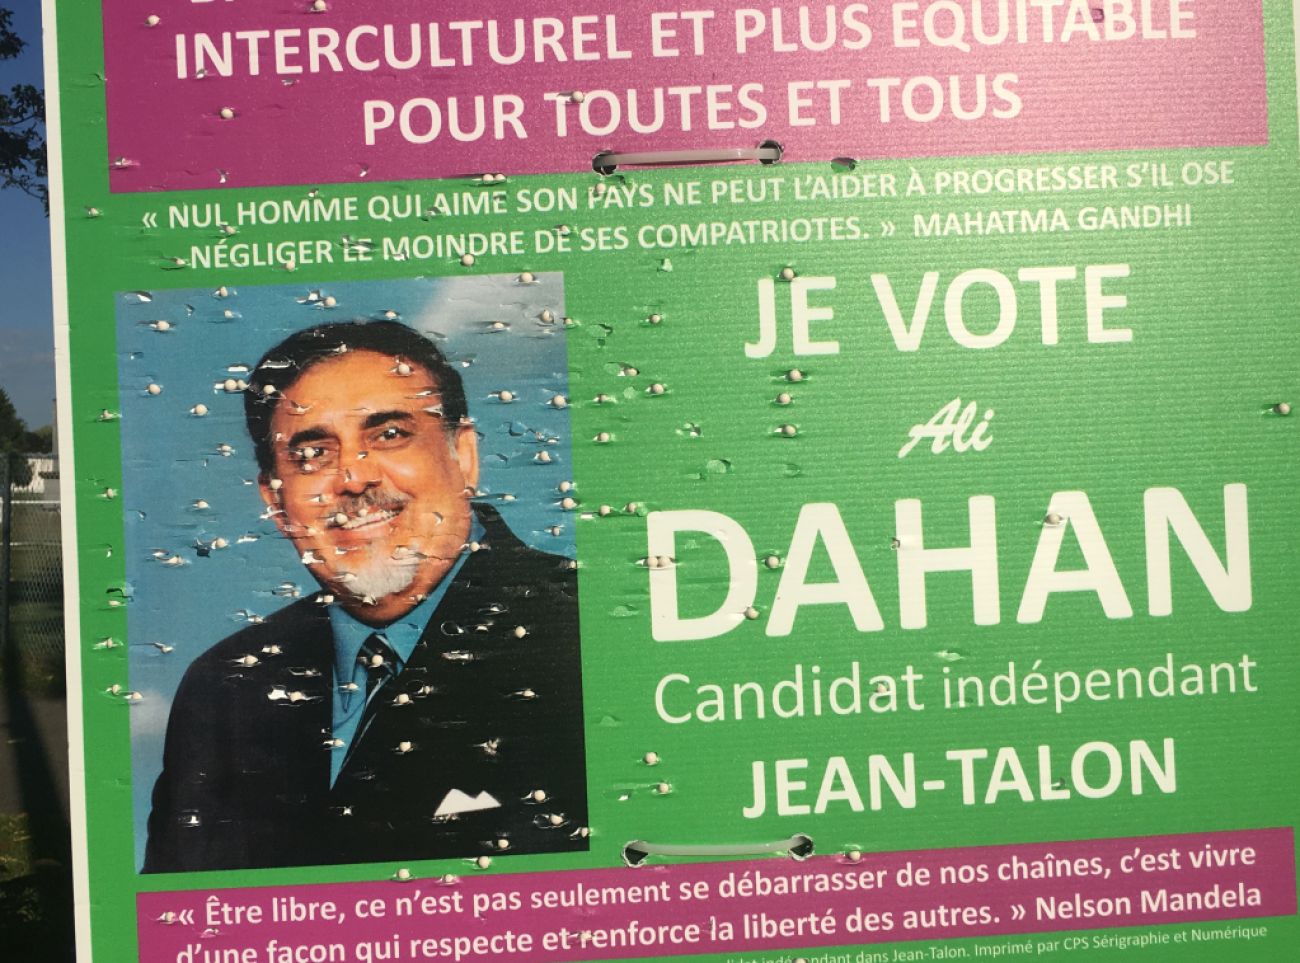 Pancarte électorale mitraillée Ali Dahan